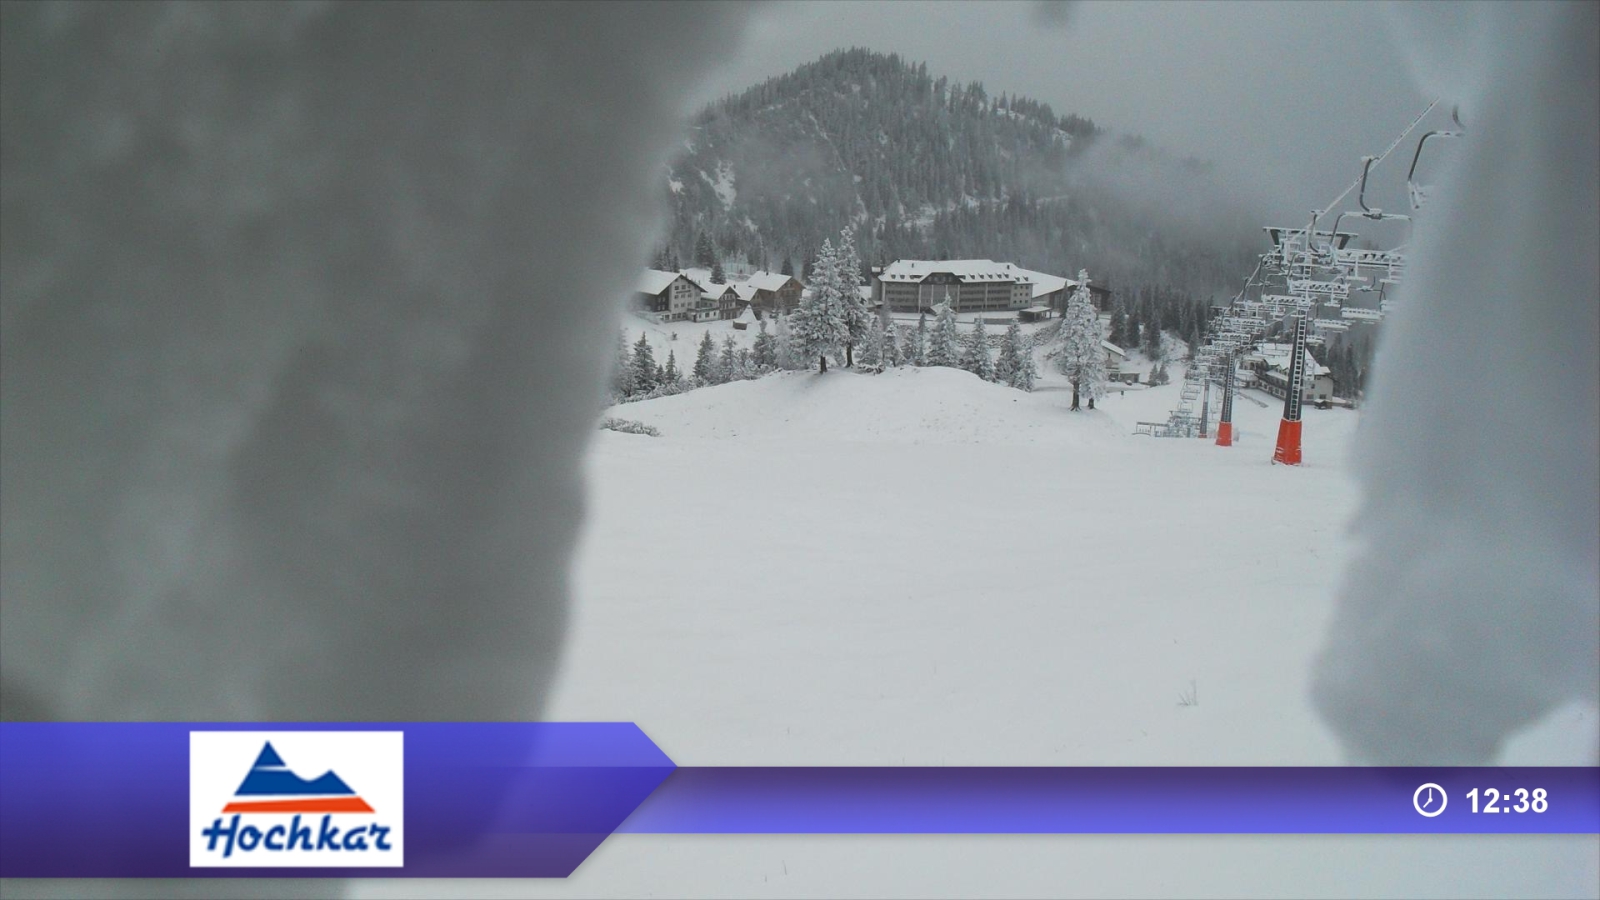 Hockar: havas lejtő a behavazott kamerán keresztül